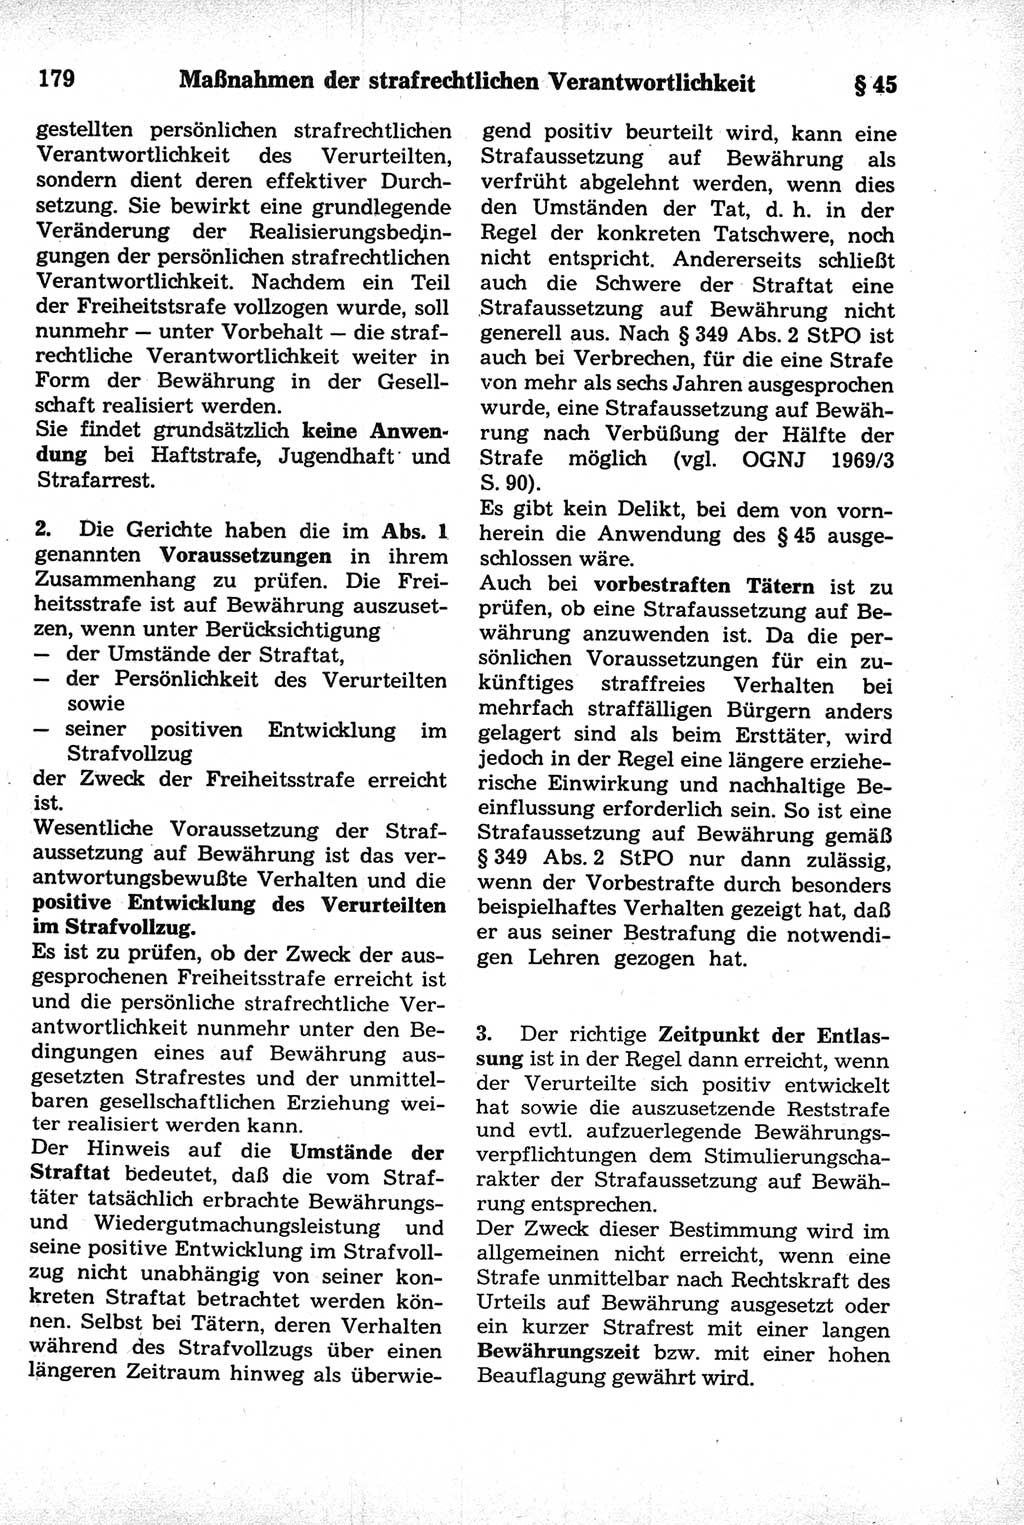 Strafrecht der Deutschen Demokratischen Republik (DDR), Kommentar zum Strafgesetzbuch (StGB) 1981, Seite 179 (Strafr. DDR Komm. StGB 1981, S. 179)